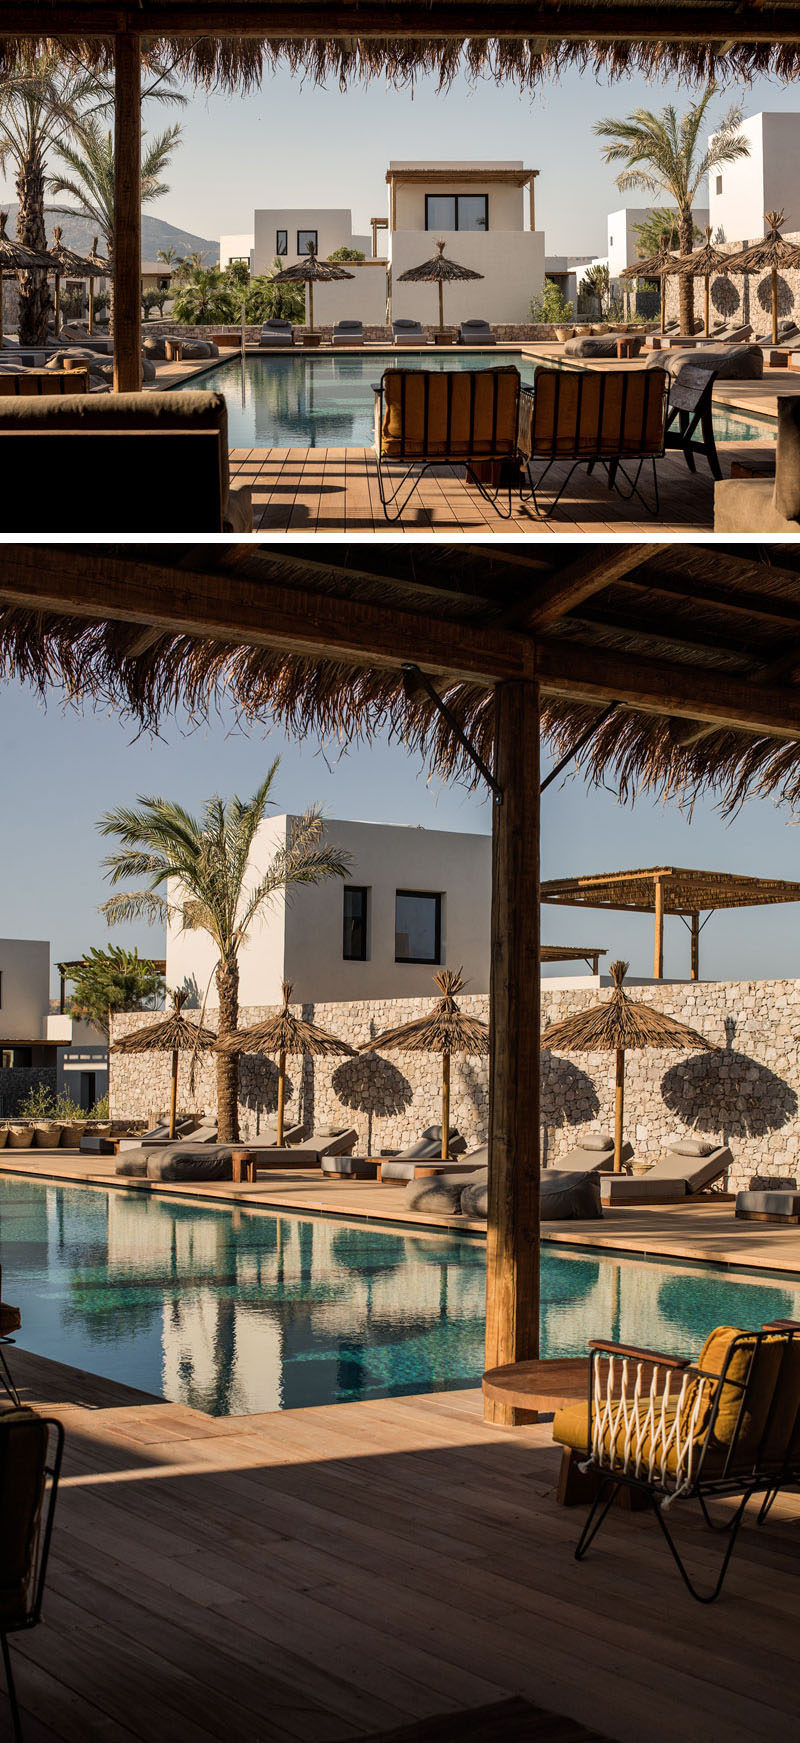 В этом современном отеле в Греции есть бассейн, окруженный деревянной террасой, шезлонгами и соломенными зонтиками. # Бассейн # Бассейн # Отель # Путешествие # Греция